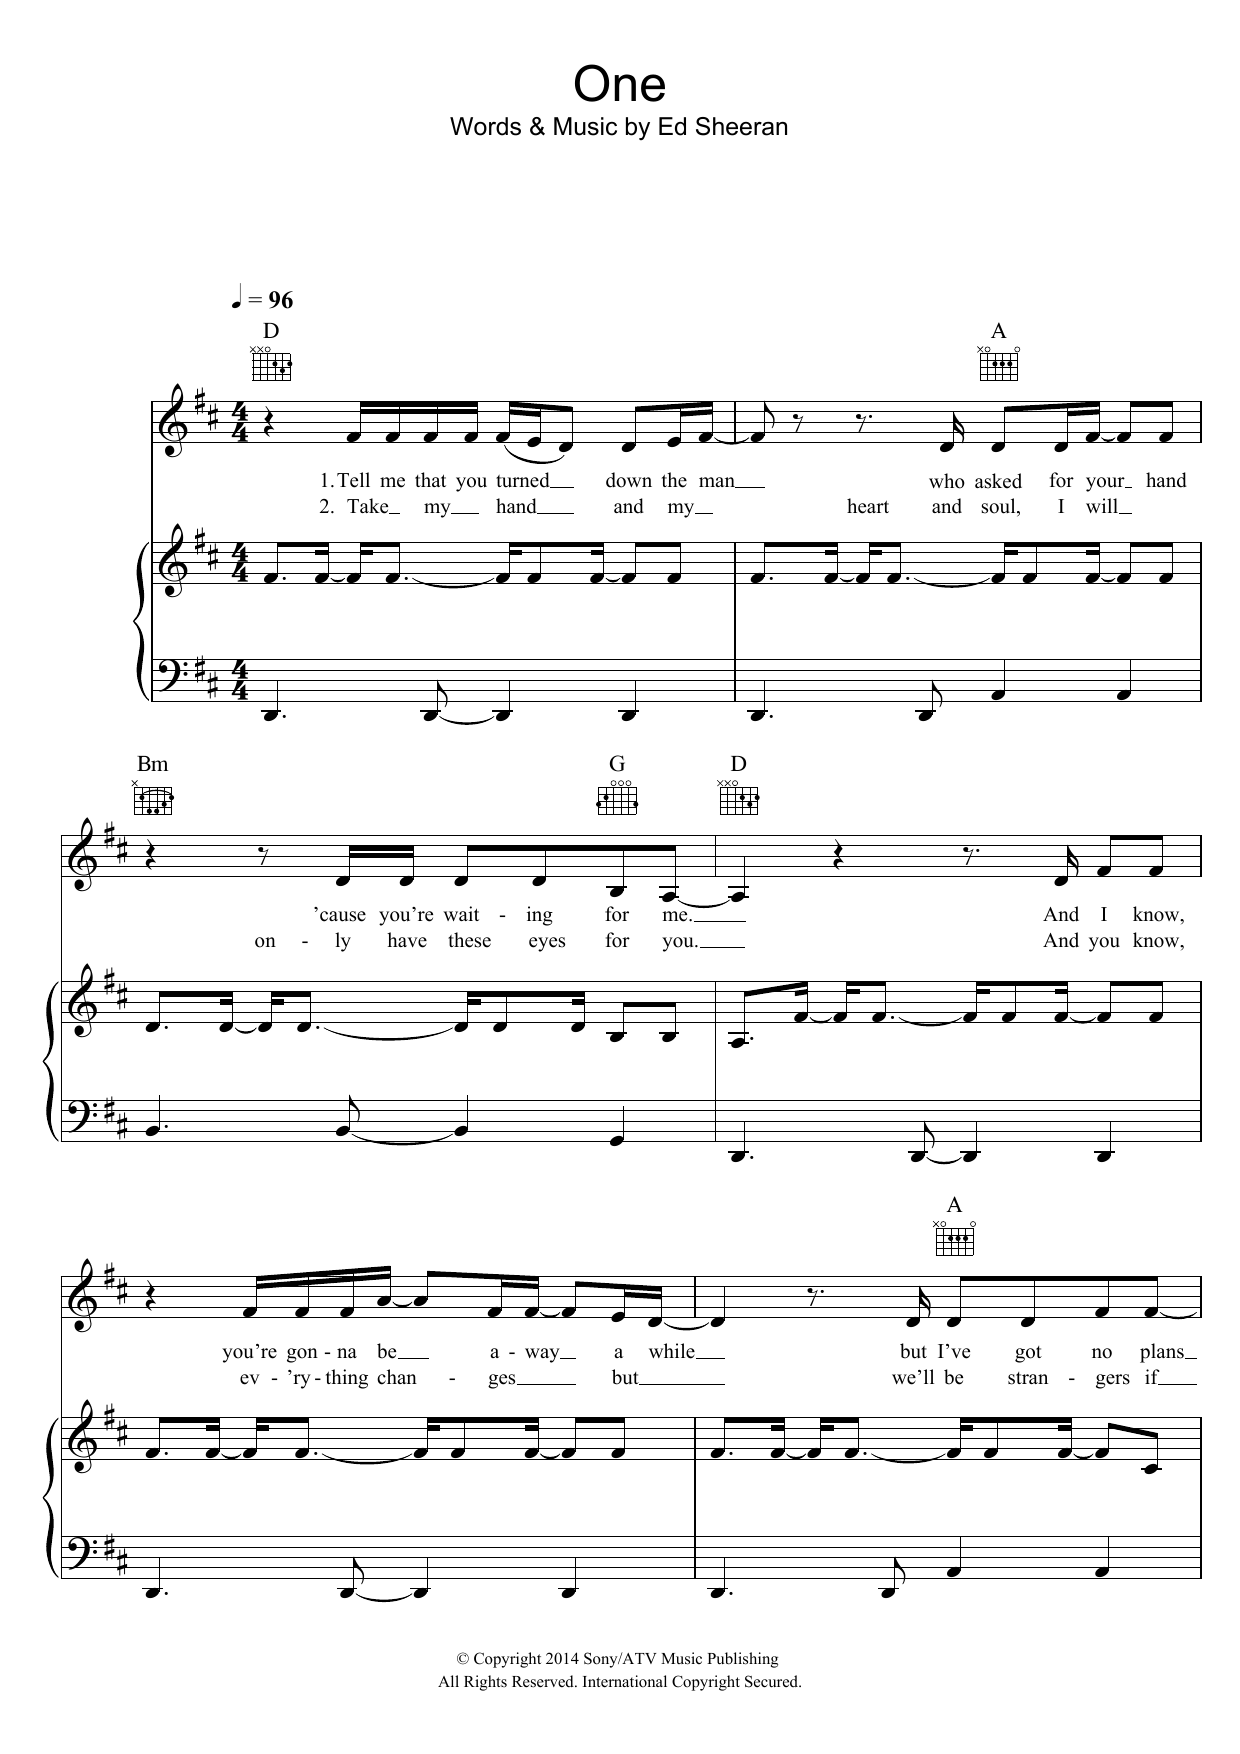 Ed Sheeran One Sheet Music Notes & Chords for Lyrics & Chords - Download or Print PDF